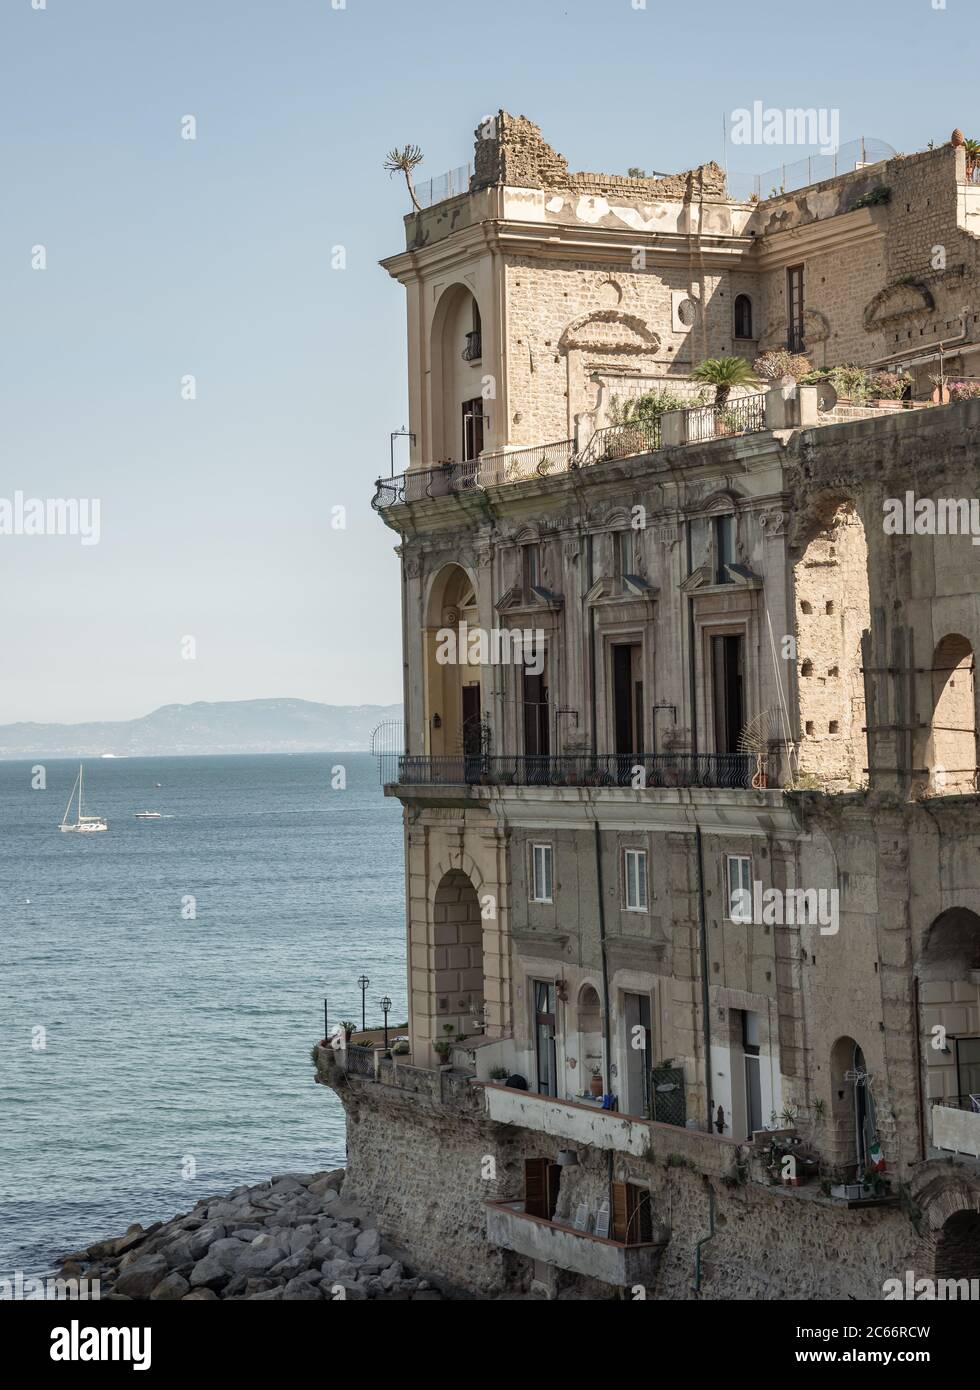 Vista sullo storico edificio Donn'Anna nel porto di Napoli - Italia Foto Stock